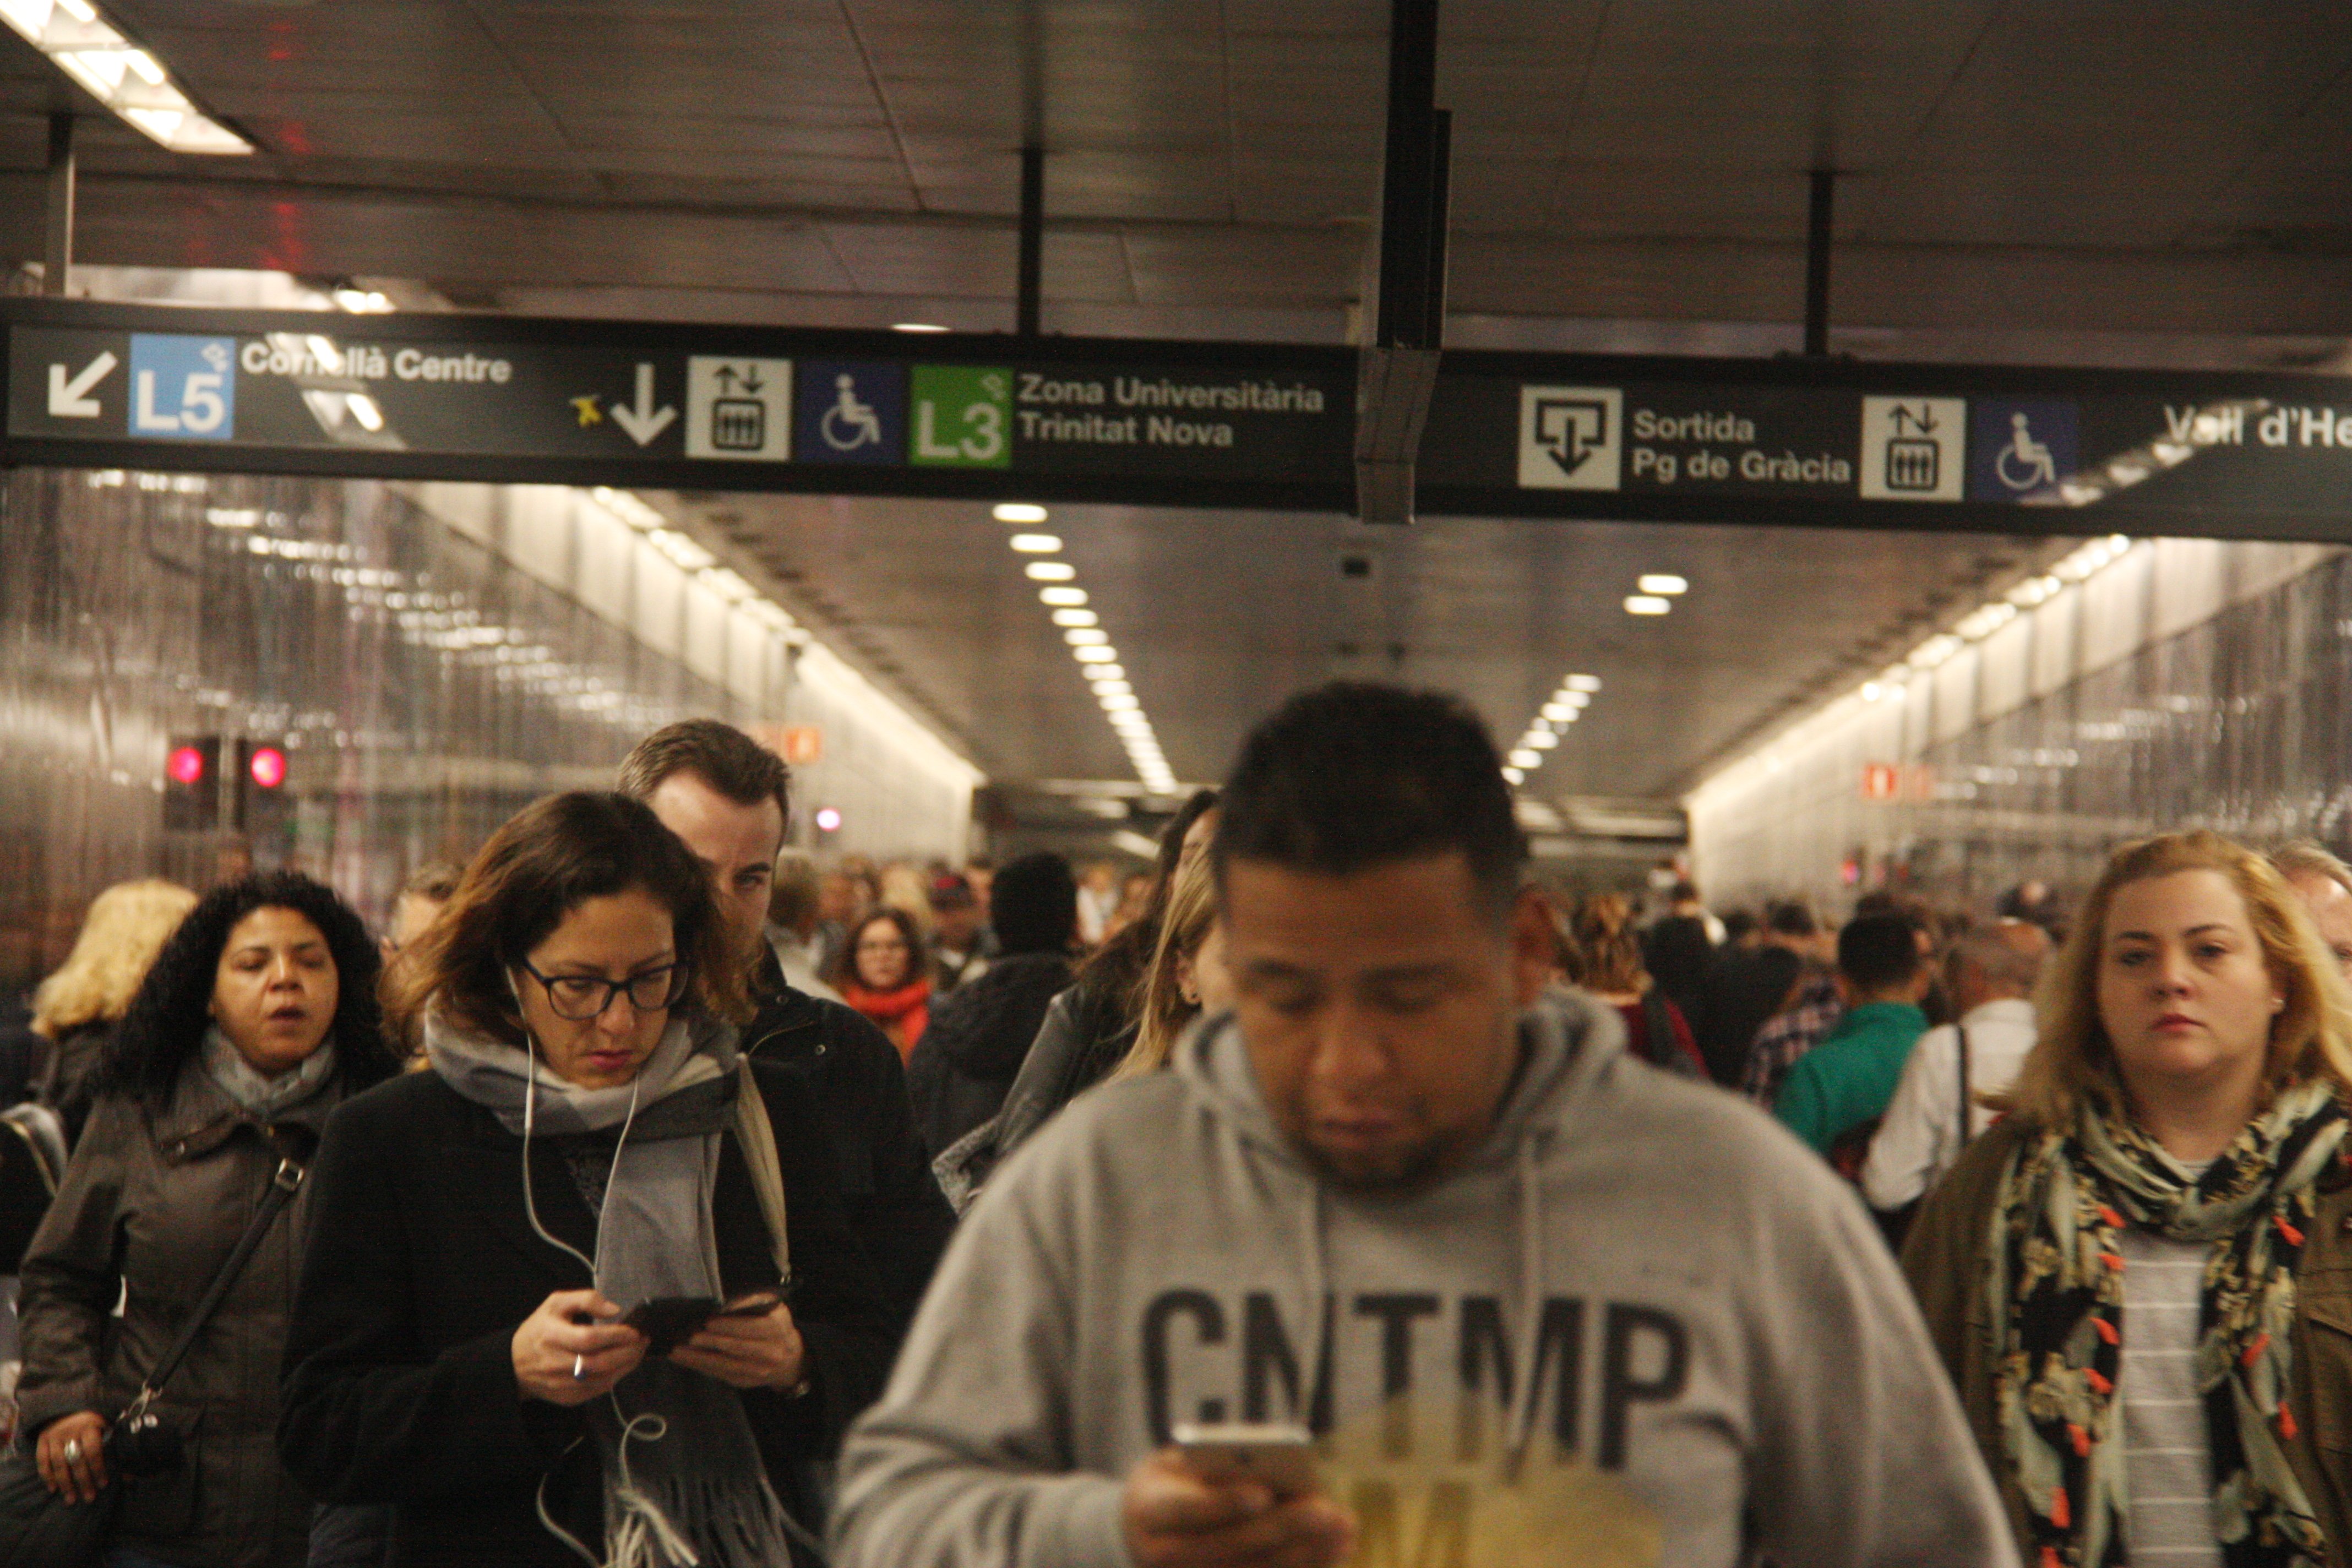 La vaga de metro obliga a regular els accessos a estacions de l'L5